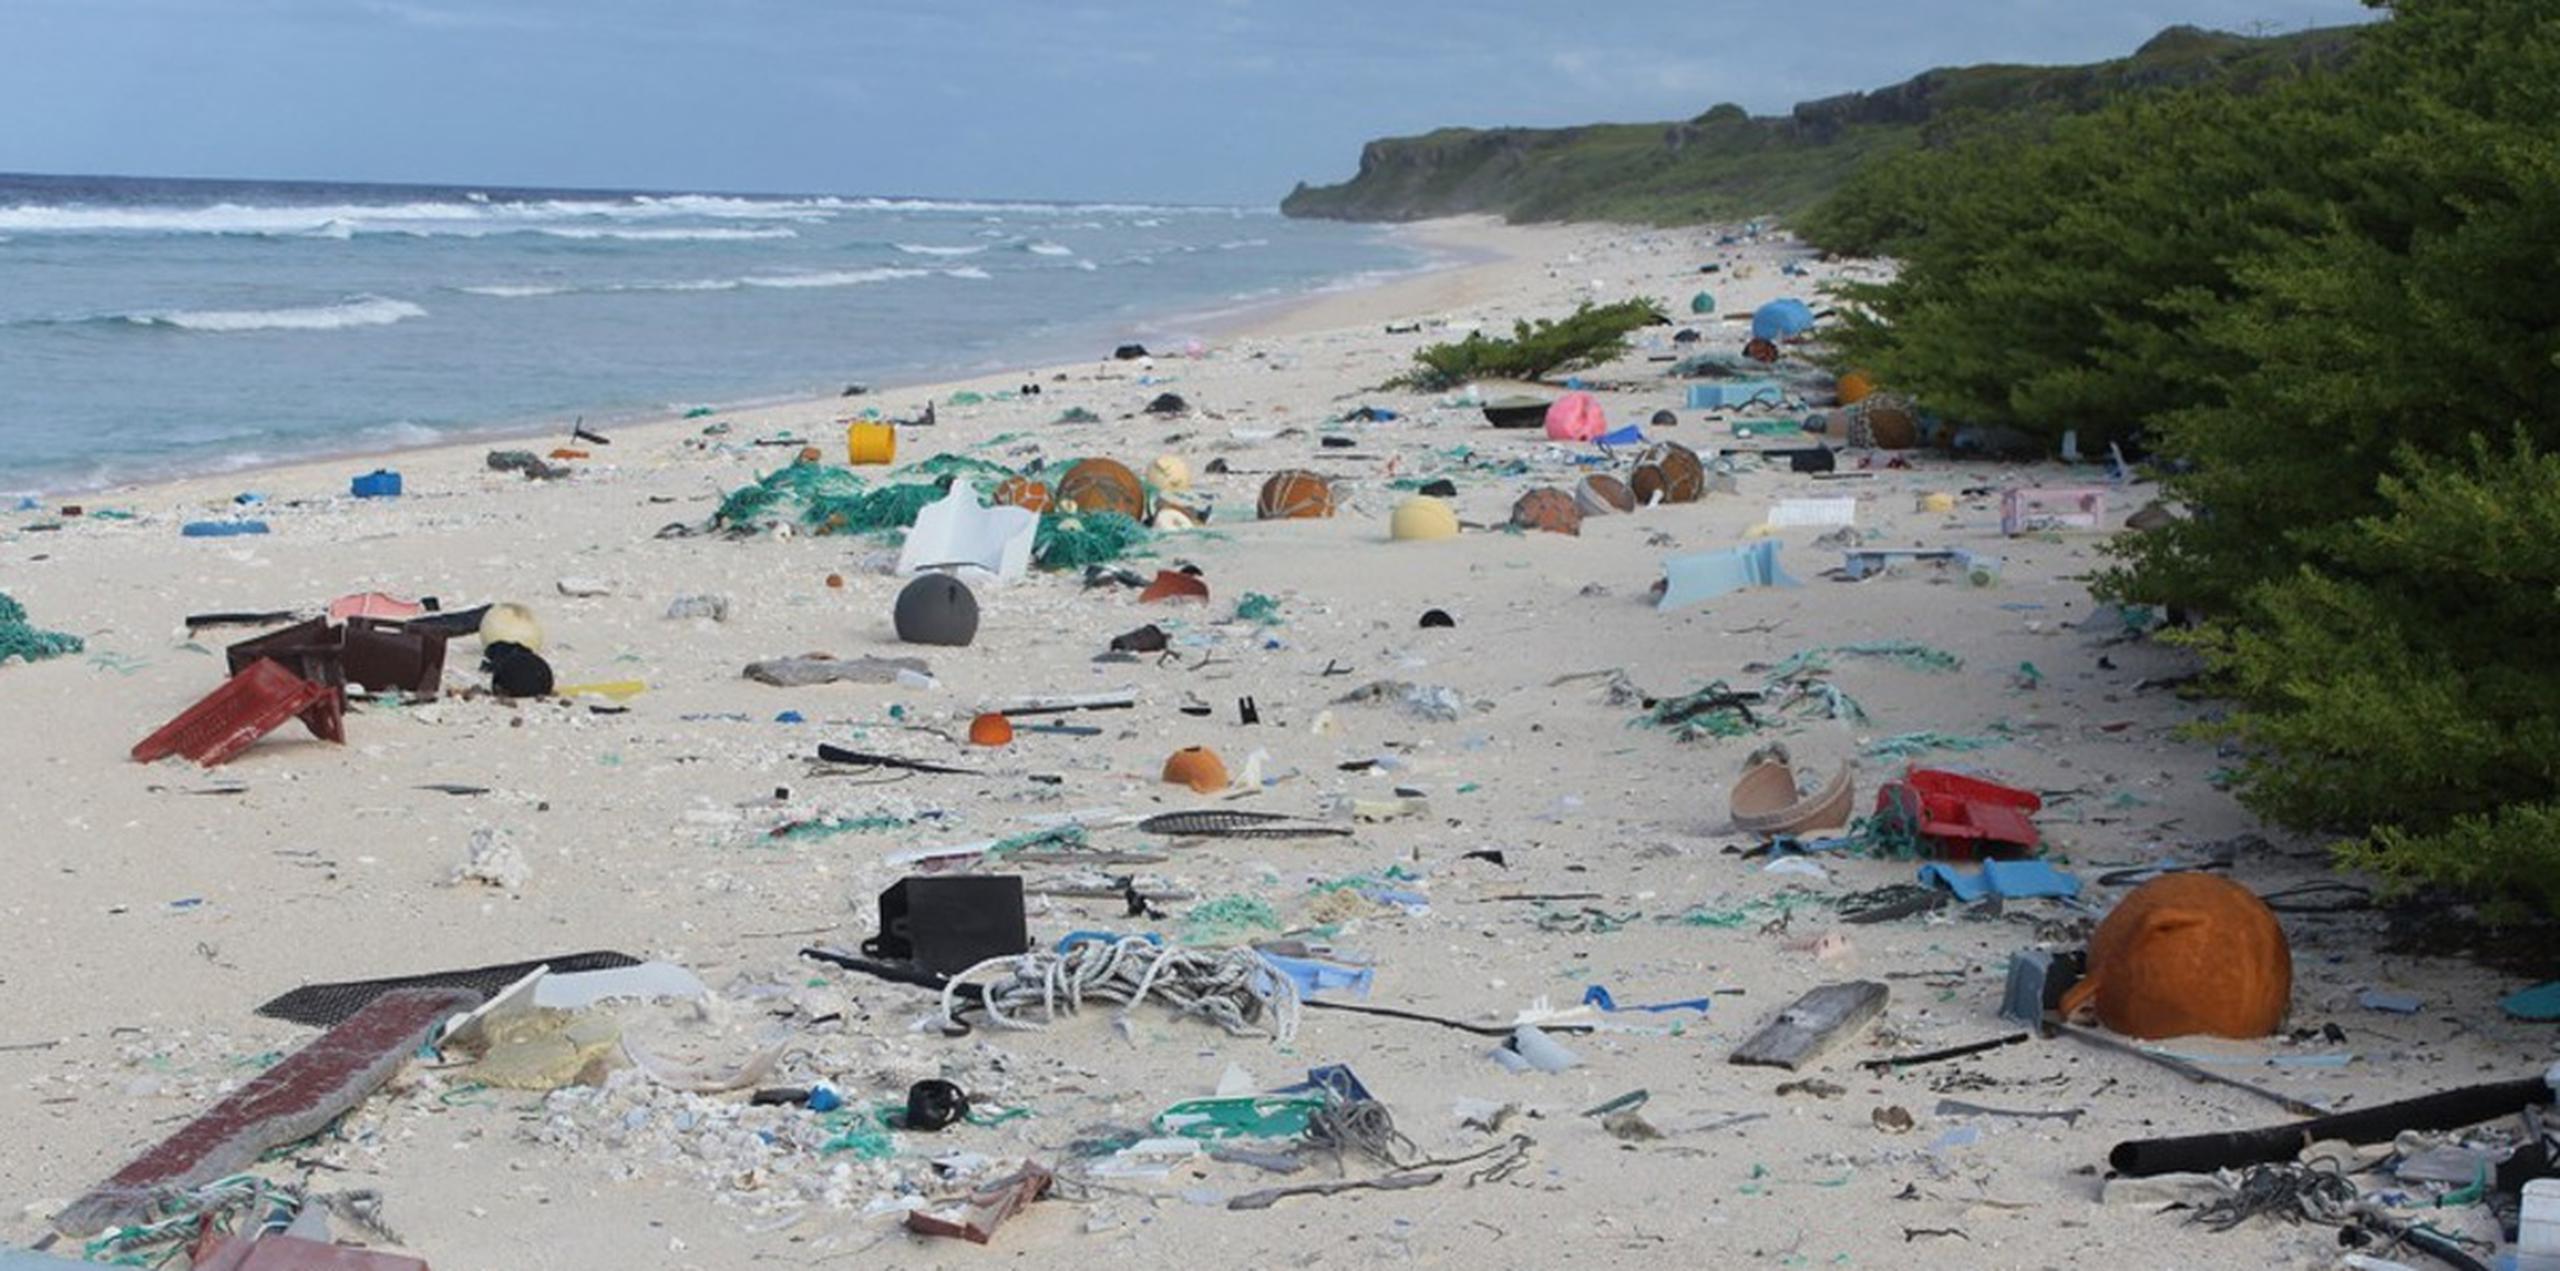 Los investigadores señalaron que esa densidad de basura es la mayor registrada en cualquier lugar del mundo, a pesar de lo remoto de la isla. (Twitter)